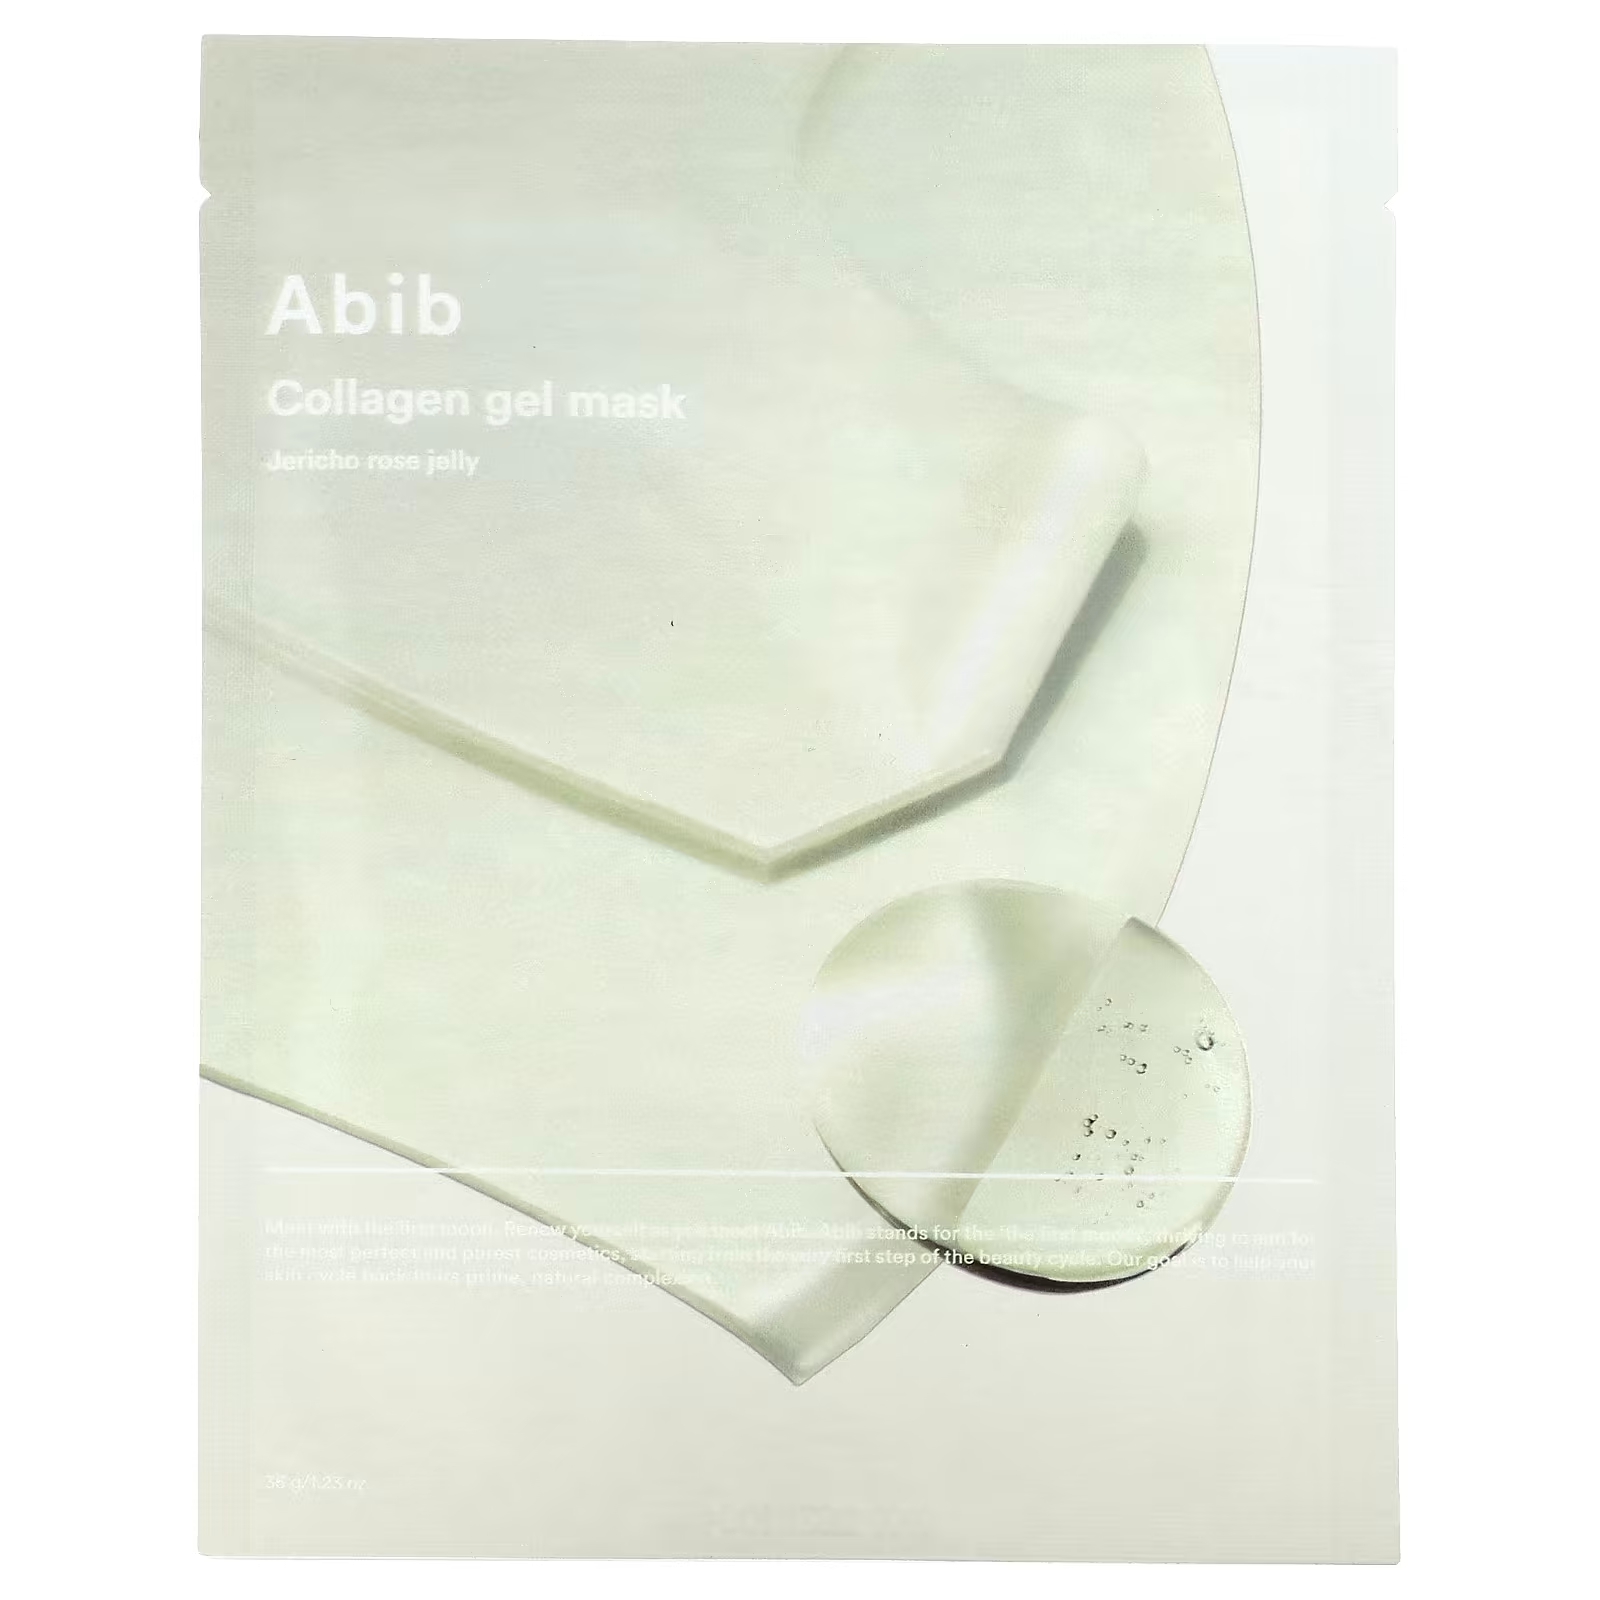 Abib Collagen Gel Beauty Mask Jericho Rose Jelly, 1 тканевая маска, 1,23 унции (35 г)